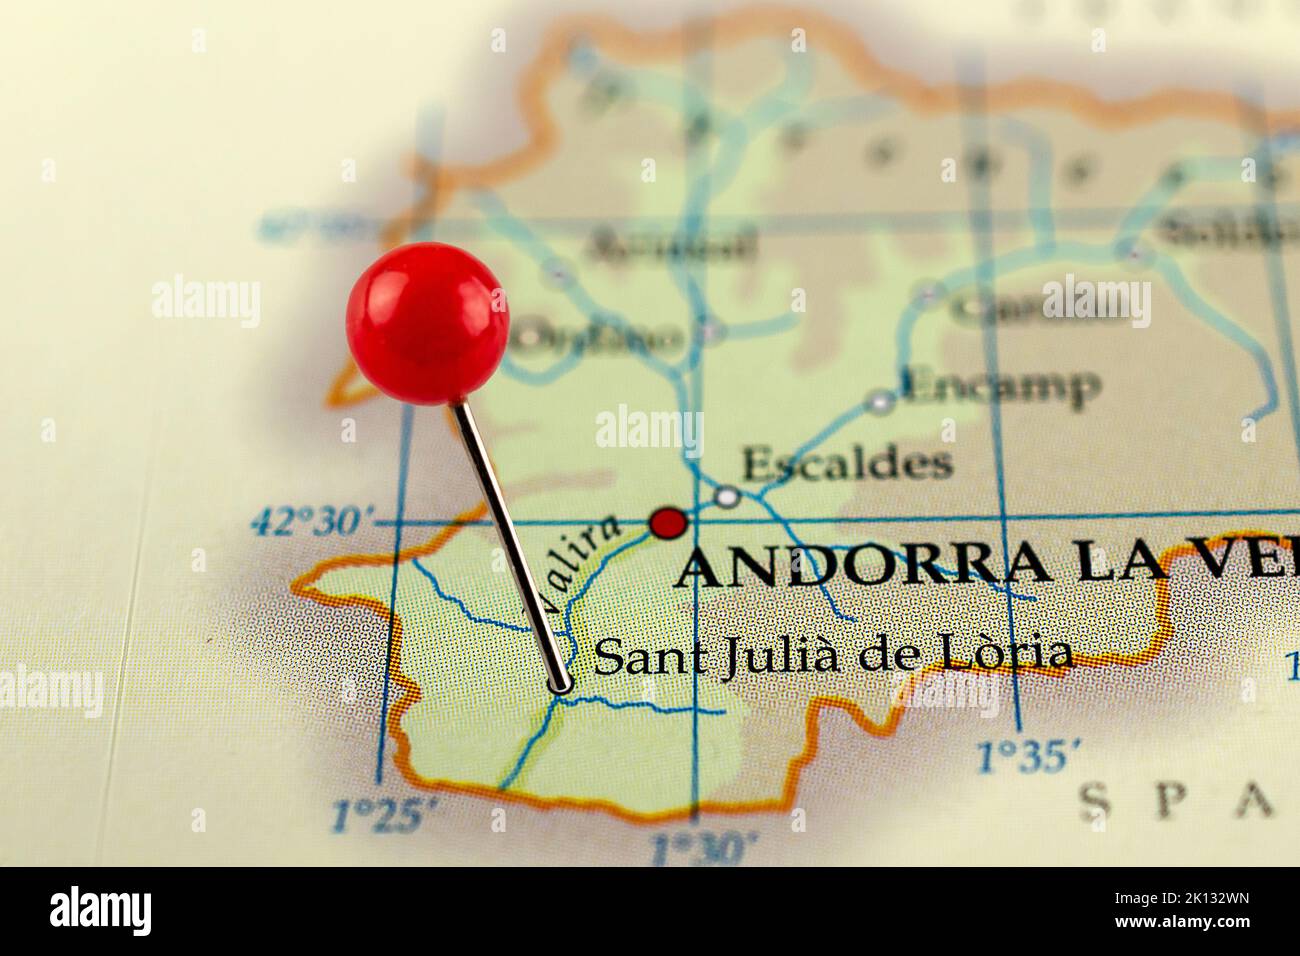 Sant Julia de Loria map. Close up of Sant Julia de Loria map with red pin. Map with red pin point of Sant Julia de Loria in Andorra. Stock Photo